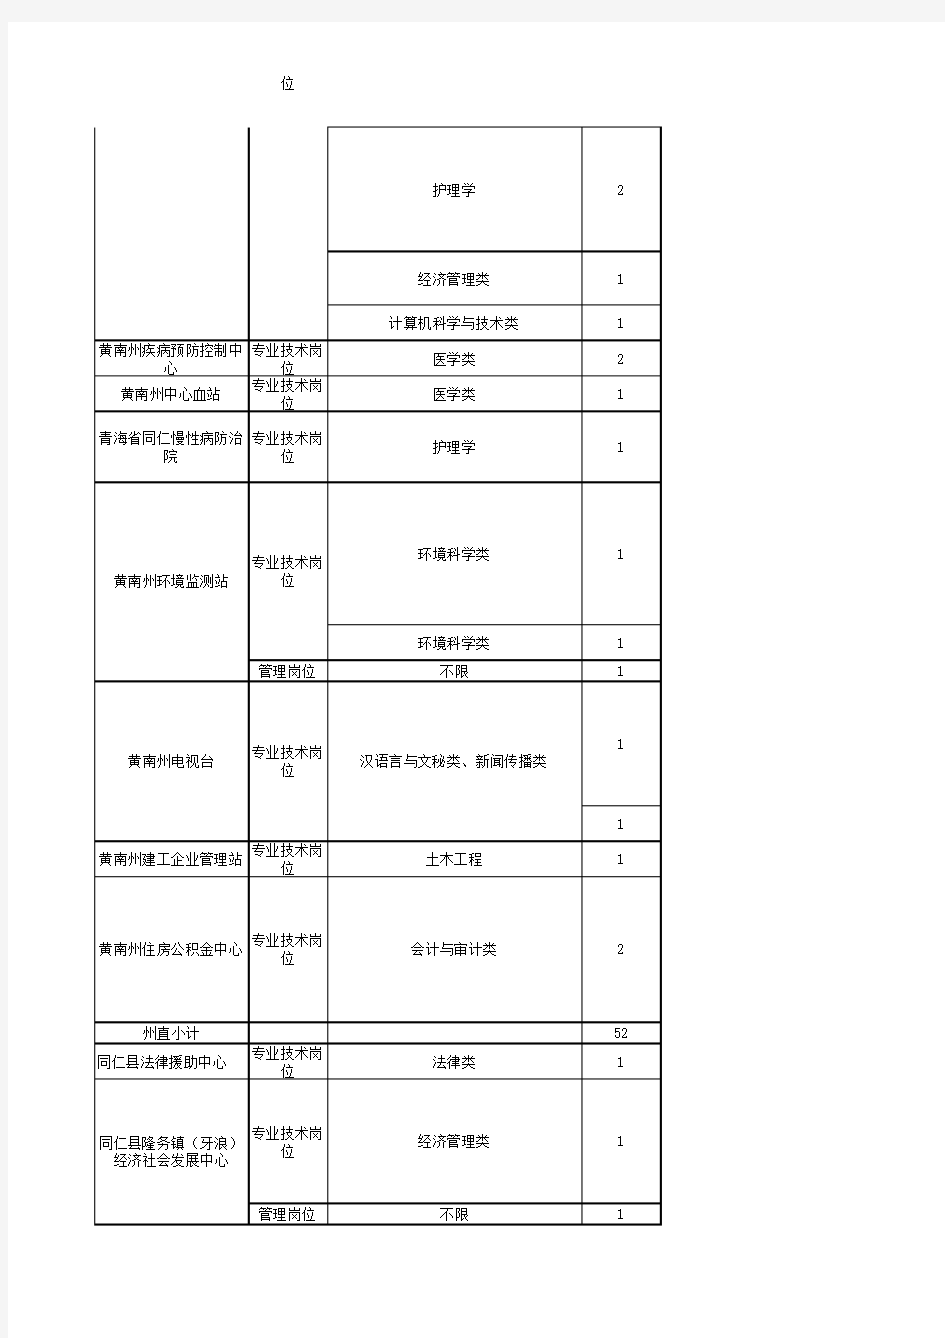 2014年度黄南州事业单位公开招聘工作人员岗位表